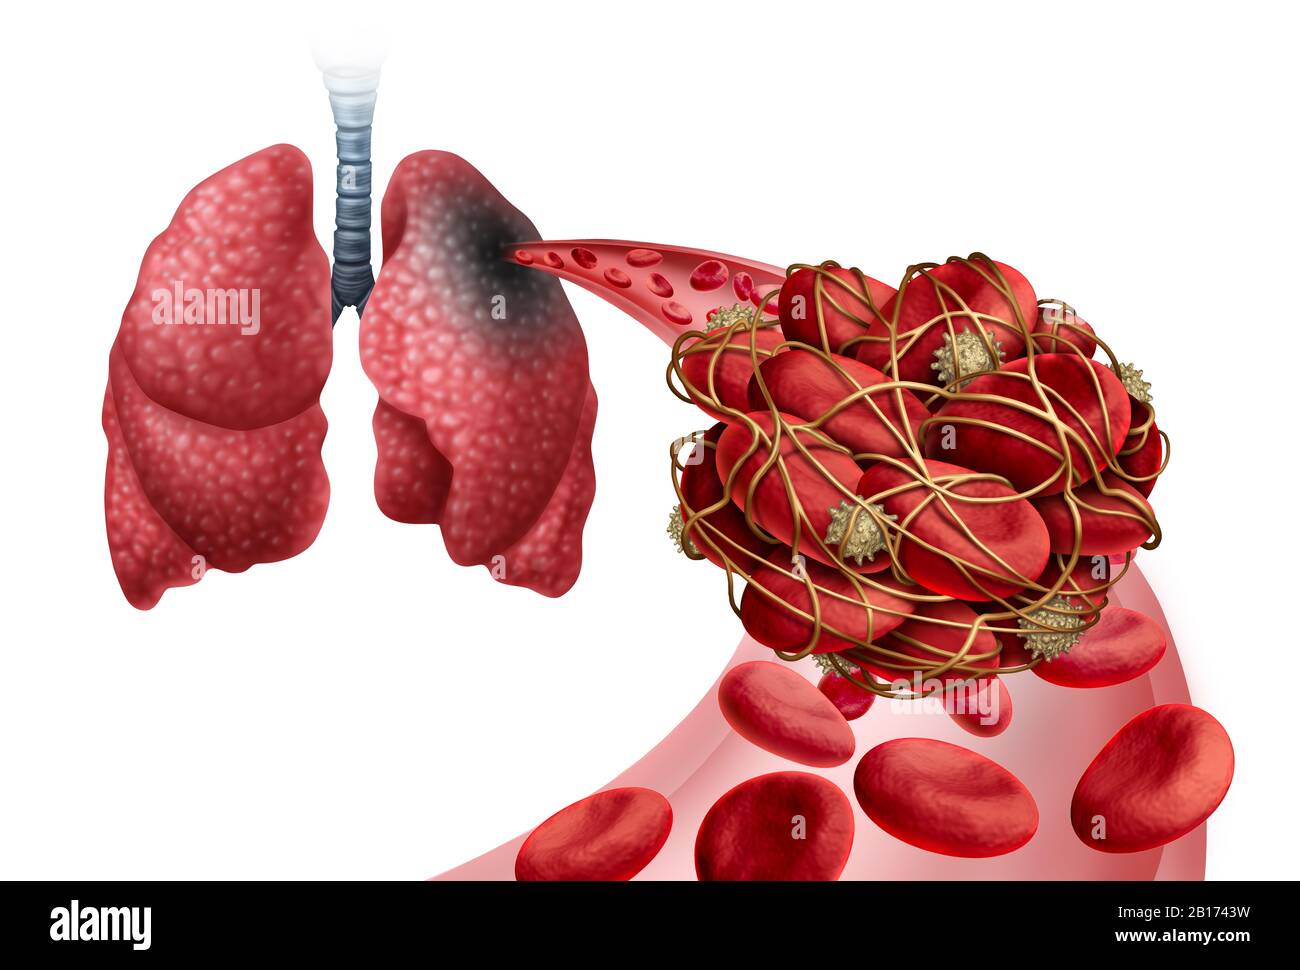 Embolismo pulmonar con coágulo sanguíneo como enfermedad con obstrucción de una arteria en los pulmones con elementos ilustrativos en 3D. Foto de stock